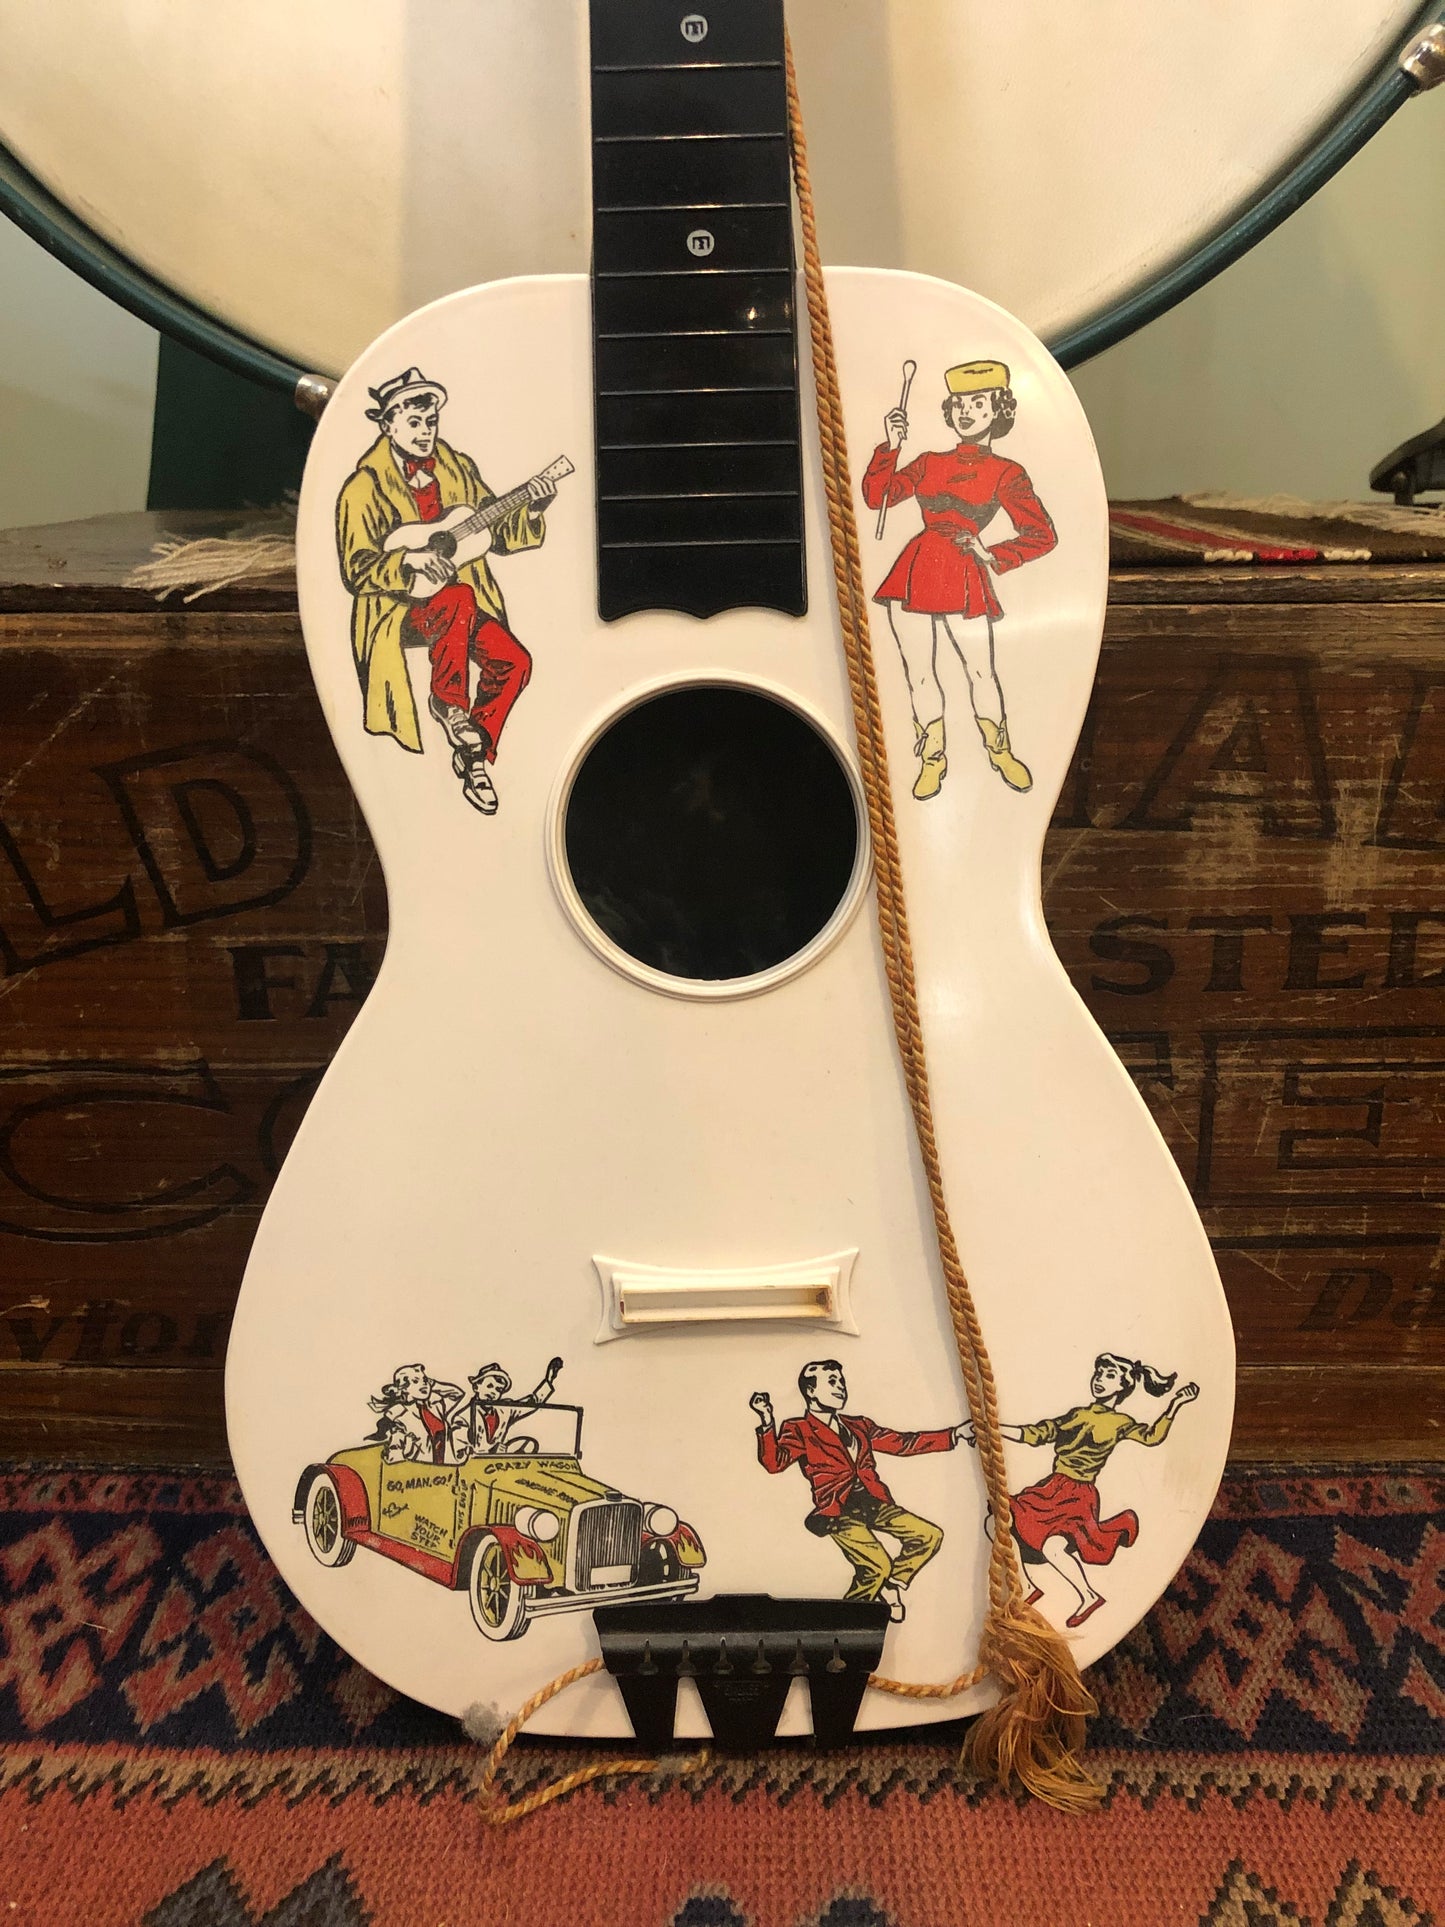 Vintage Emenee Plastic Toy Teen Timer Guitar